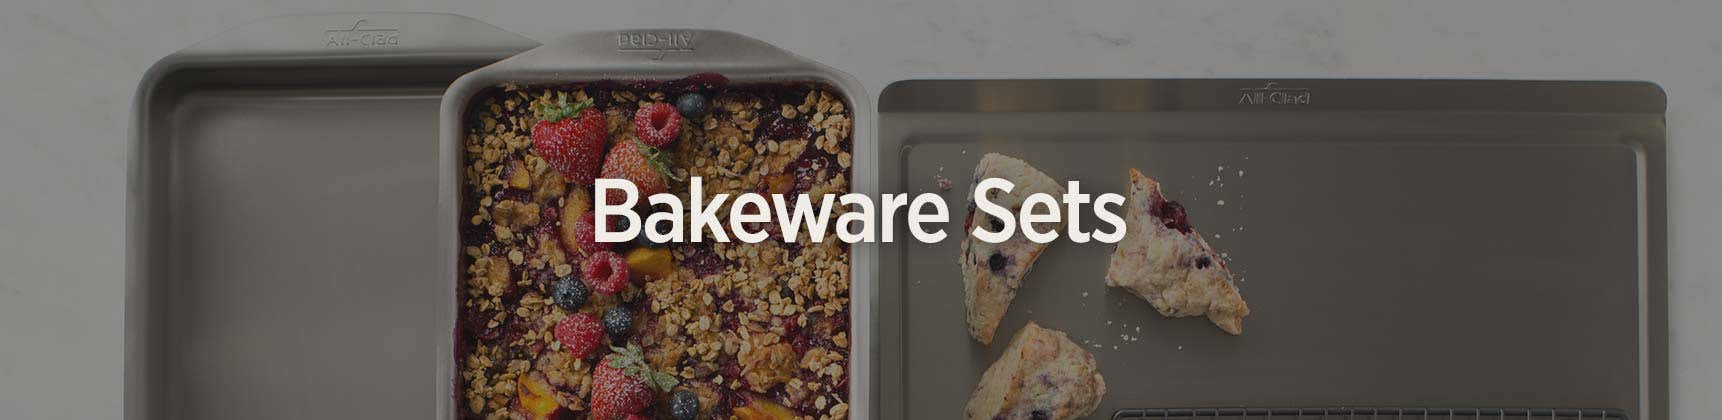 Bakeware Sets